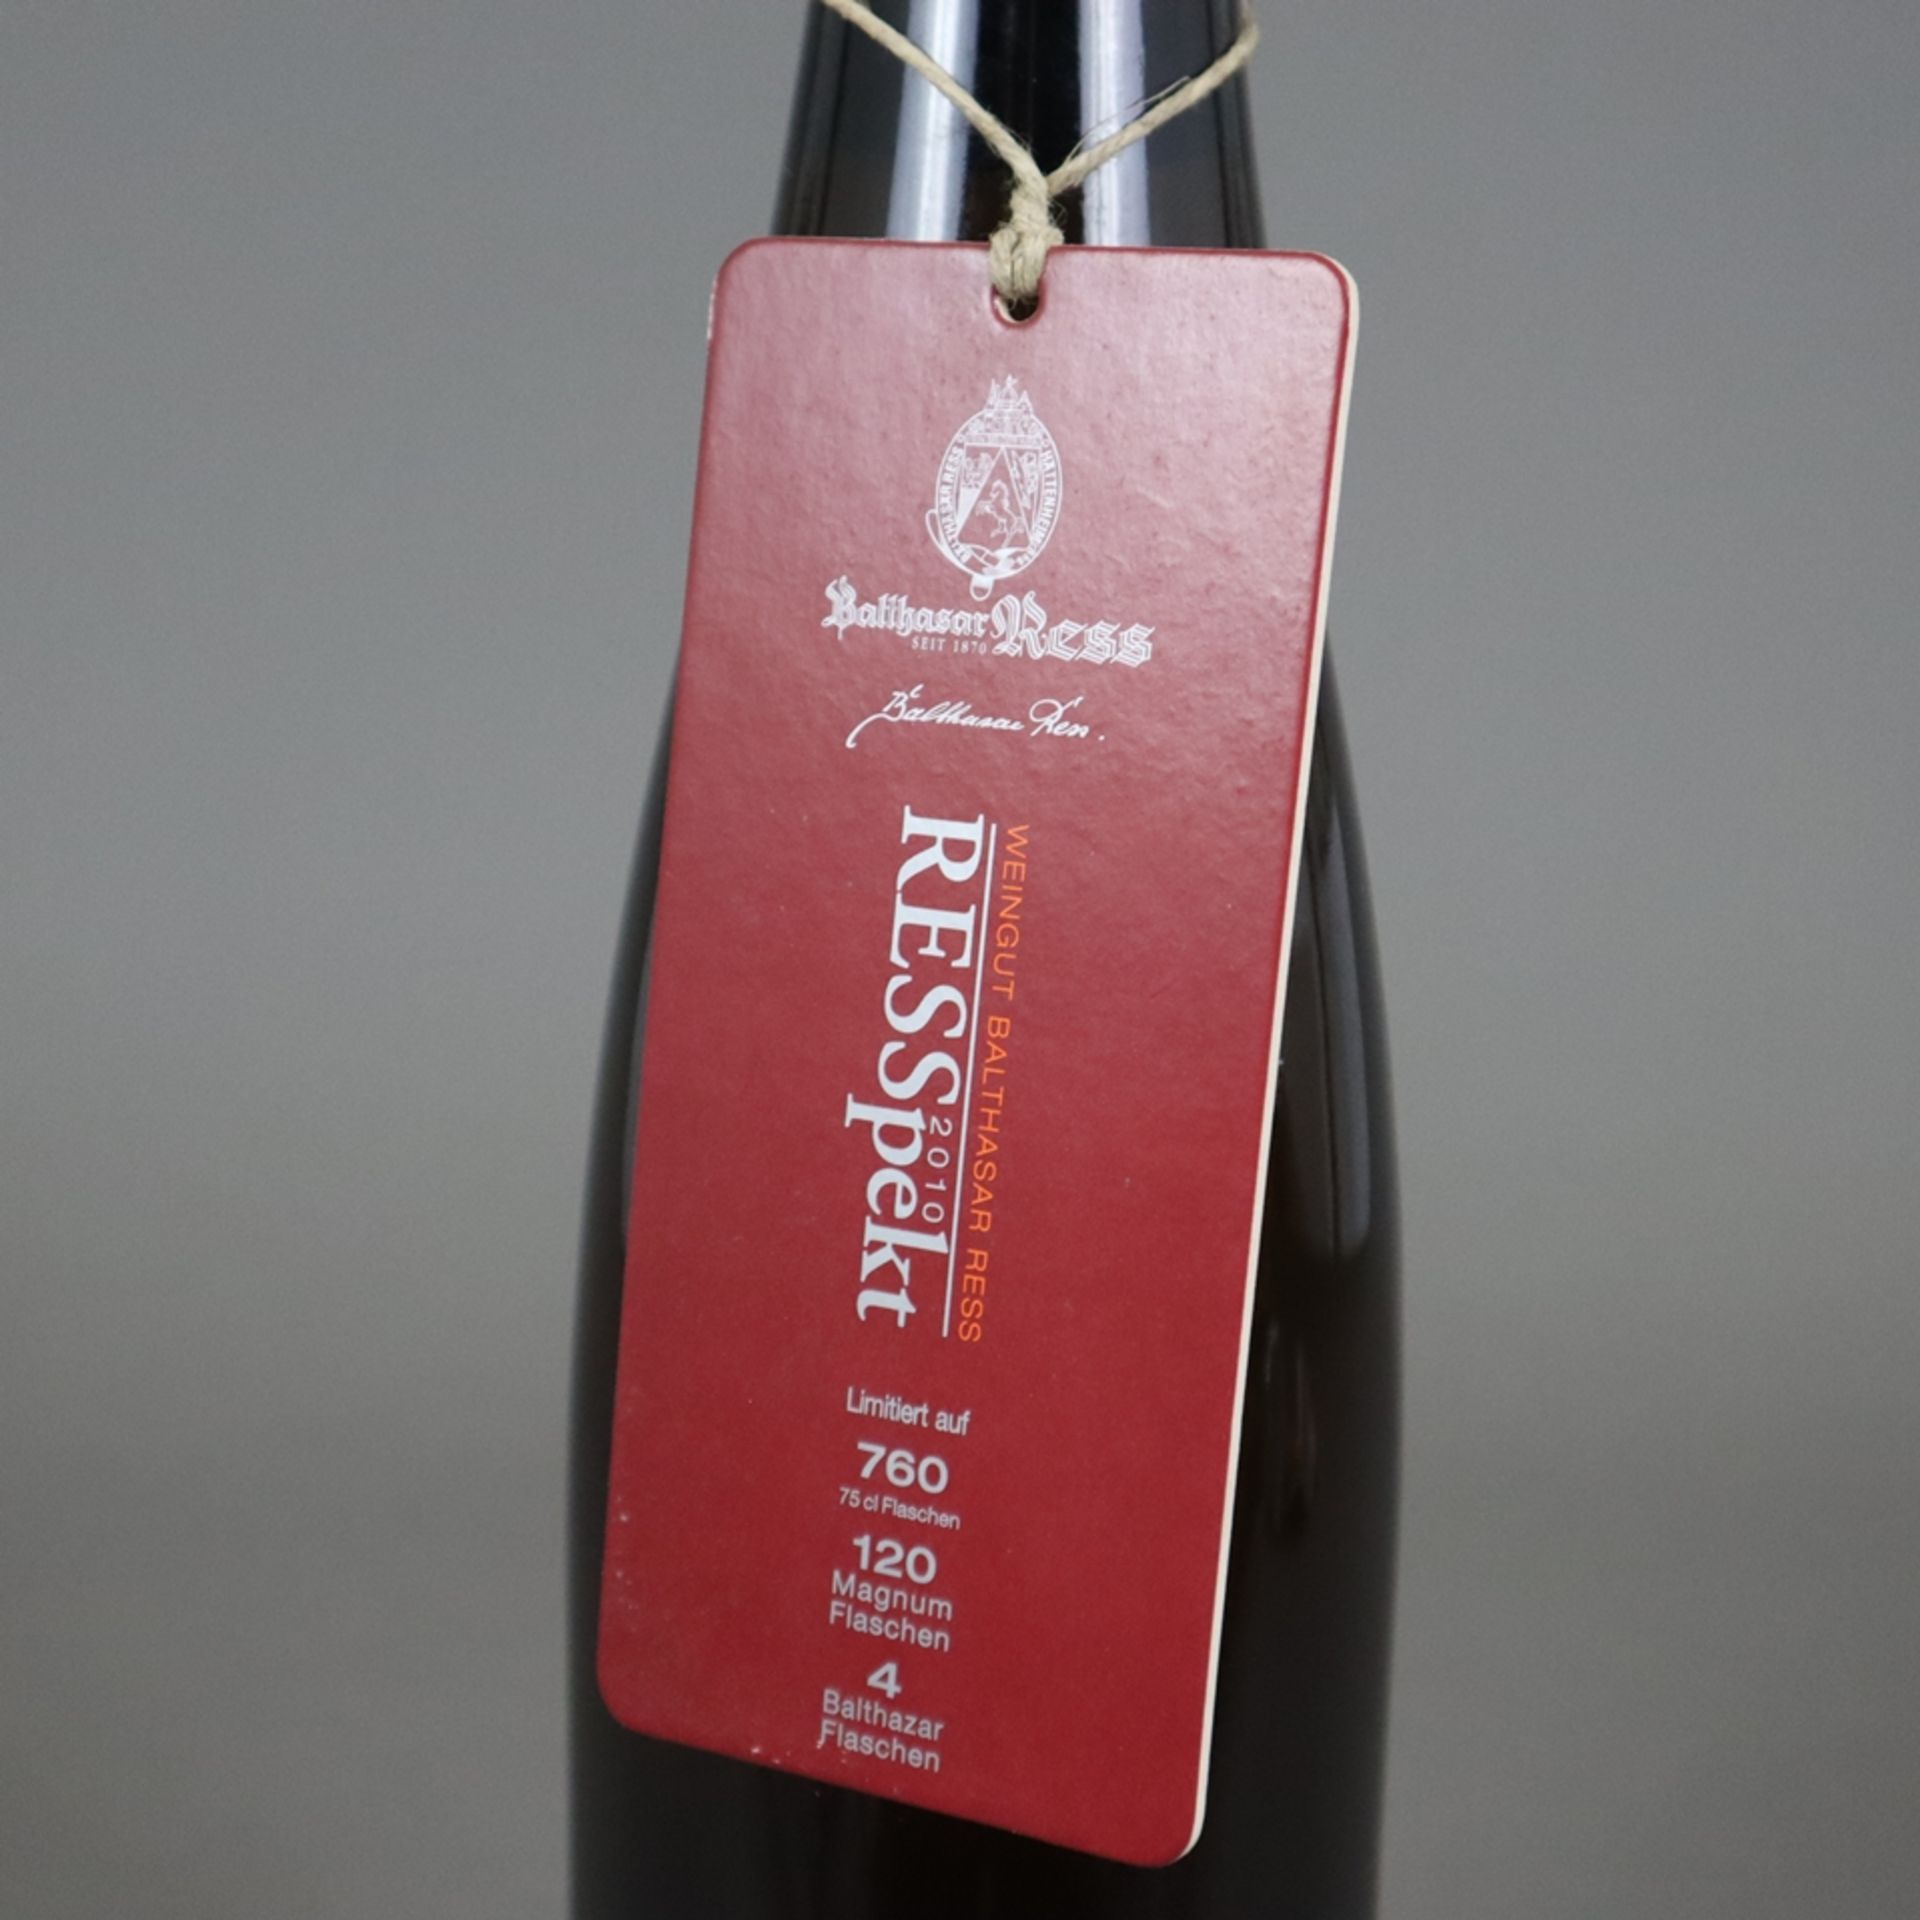 Wein - 2010 „RESSpekt“ Rheingau Riesling, 1,5 l Magnum, Füllstand: High Fill, Flasche 76/120, mit W - Bild 5 aus 6